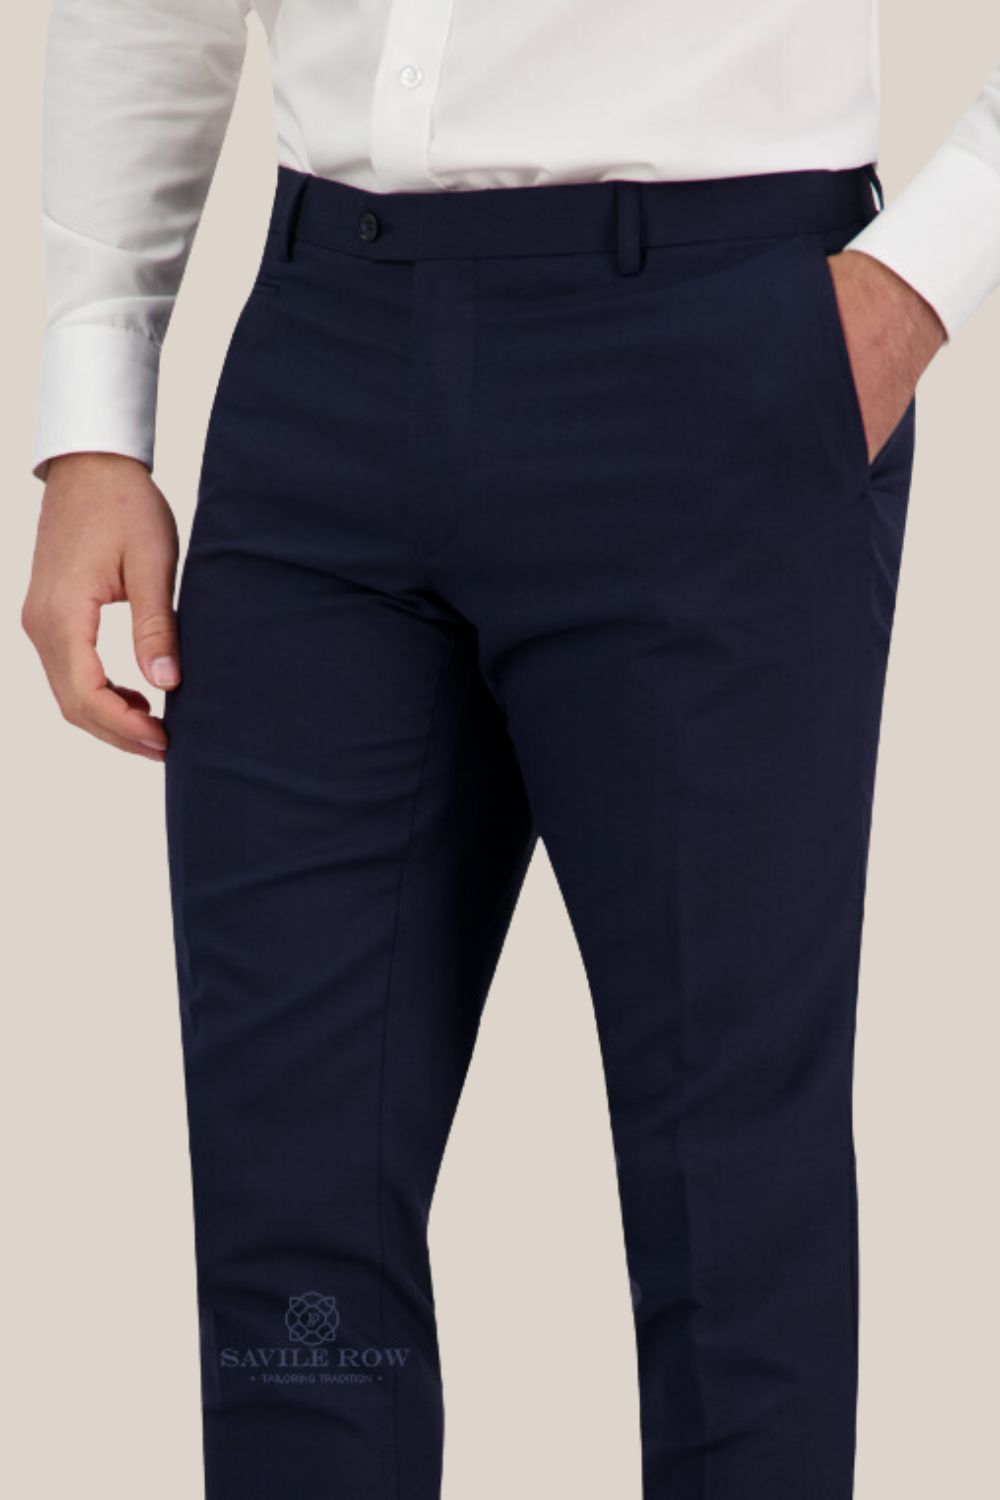 Saville Row Noah Survivor Suit Pants - B7